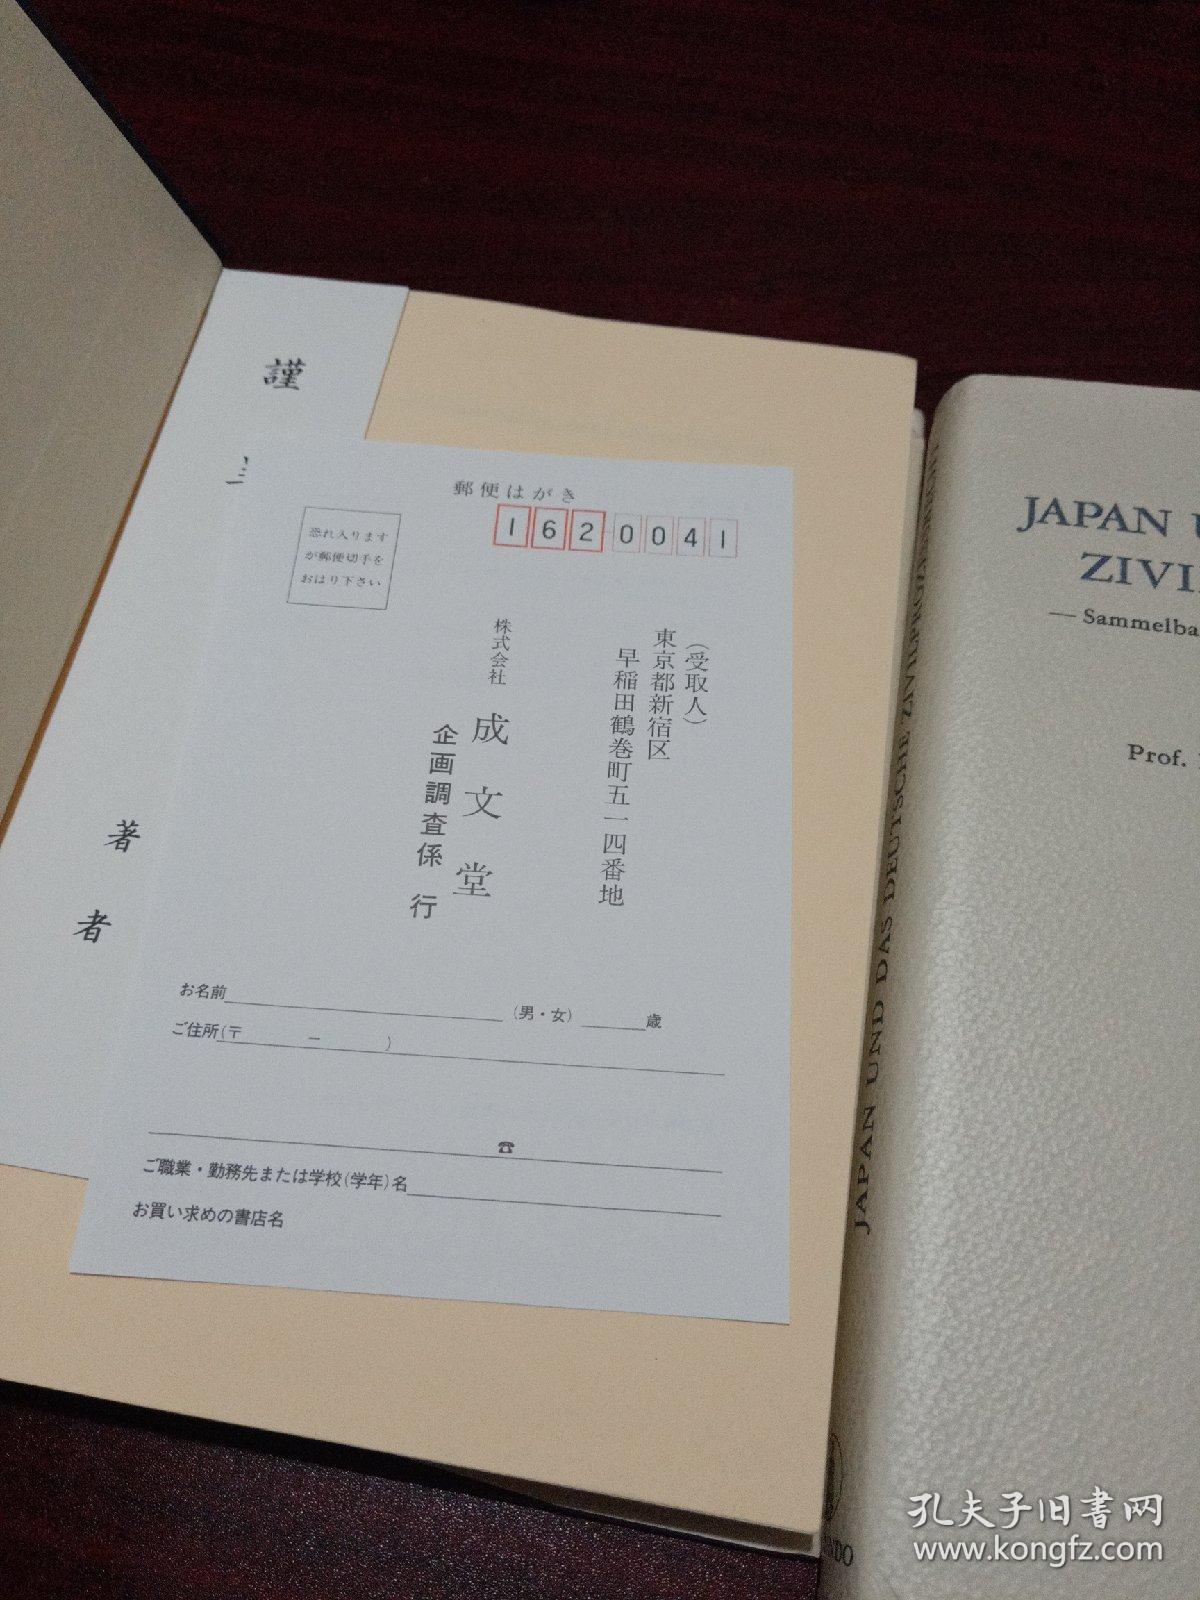 日本和德国-诉讼程序备忘录收集盘  1996   2007两册合售（英文）稀缺孤本